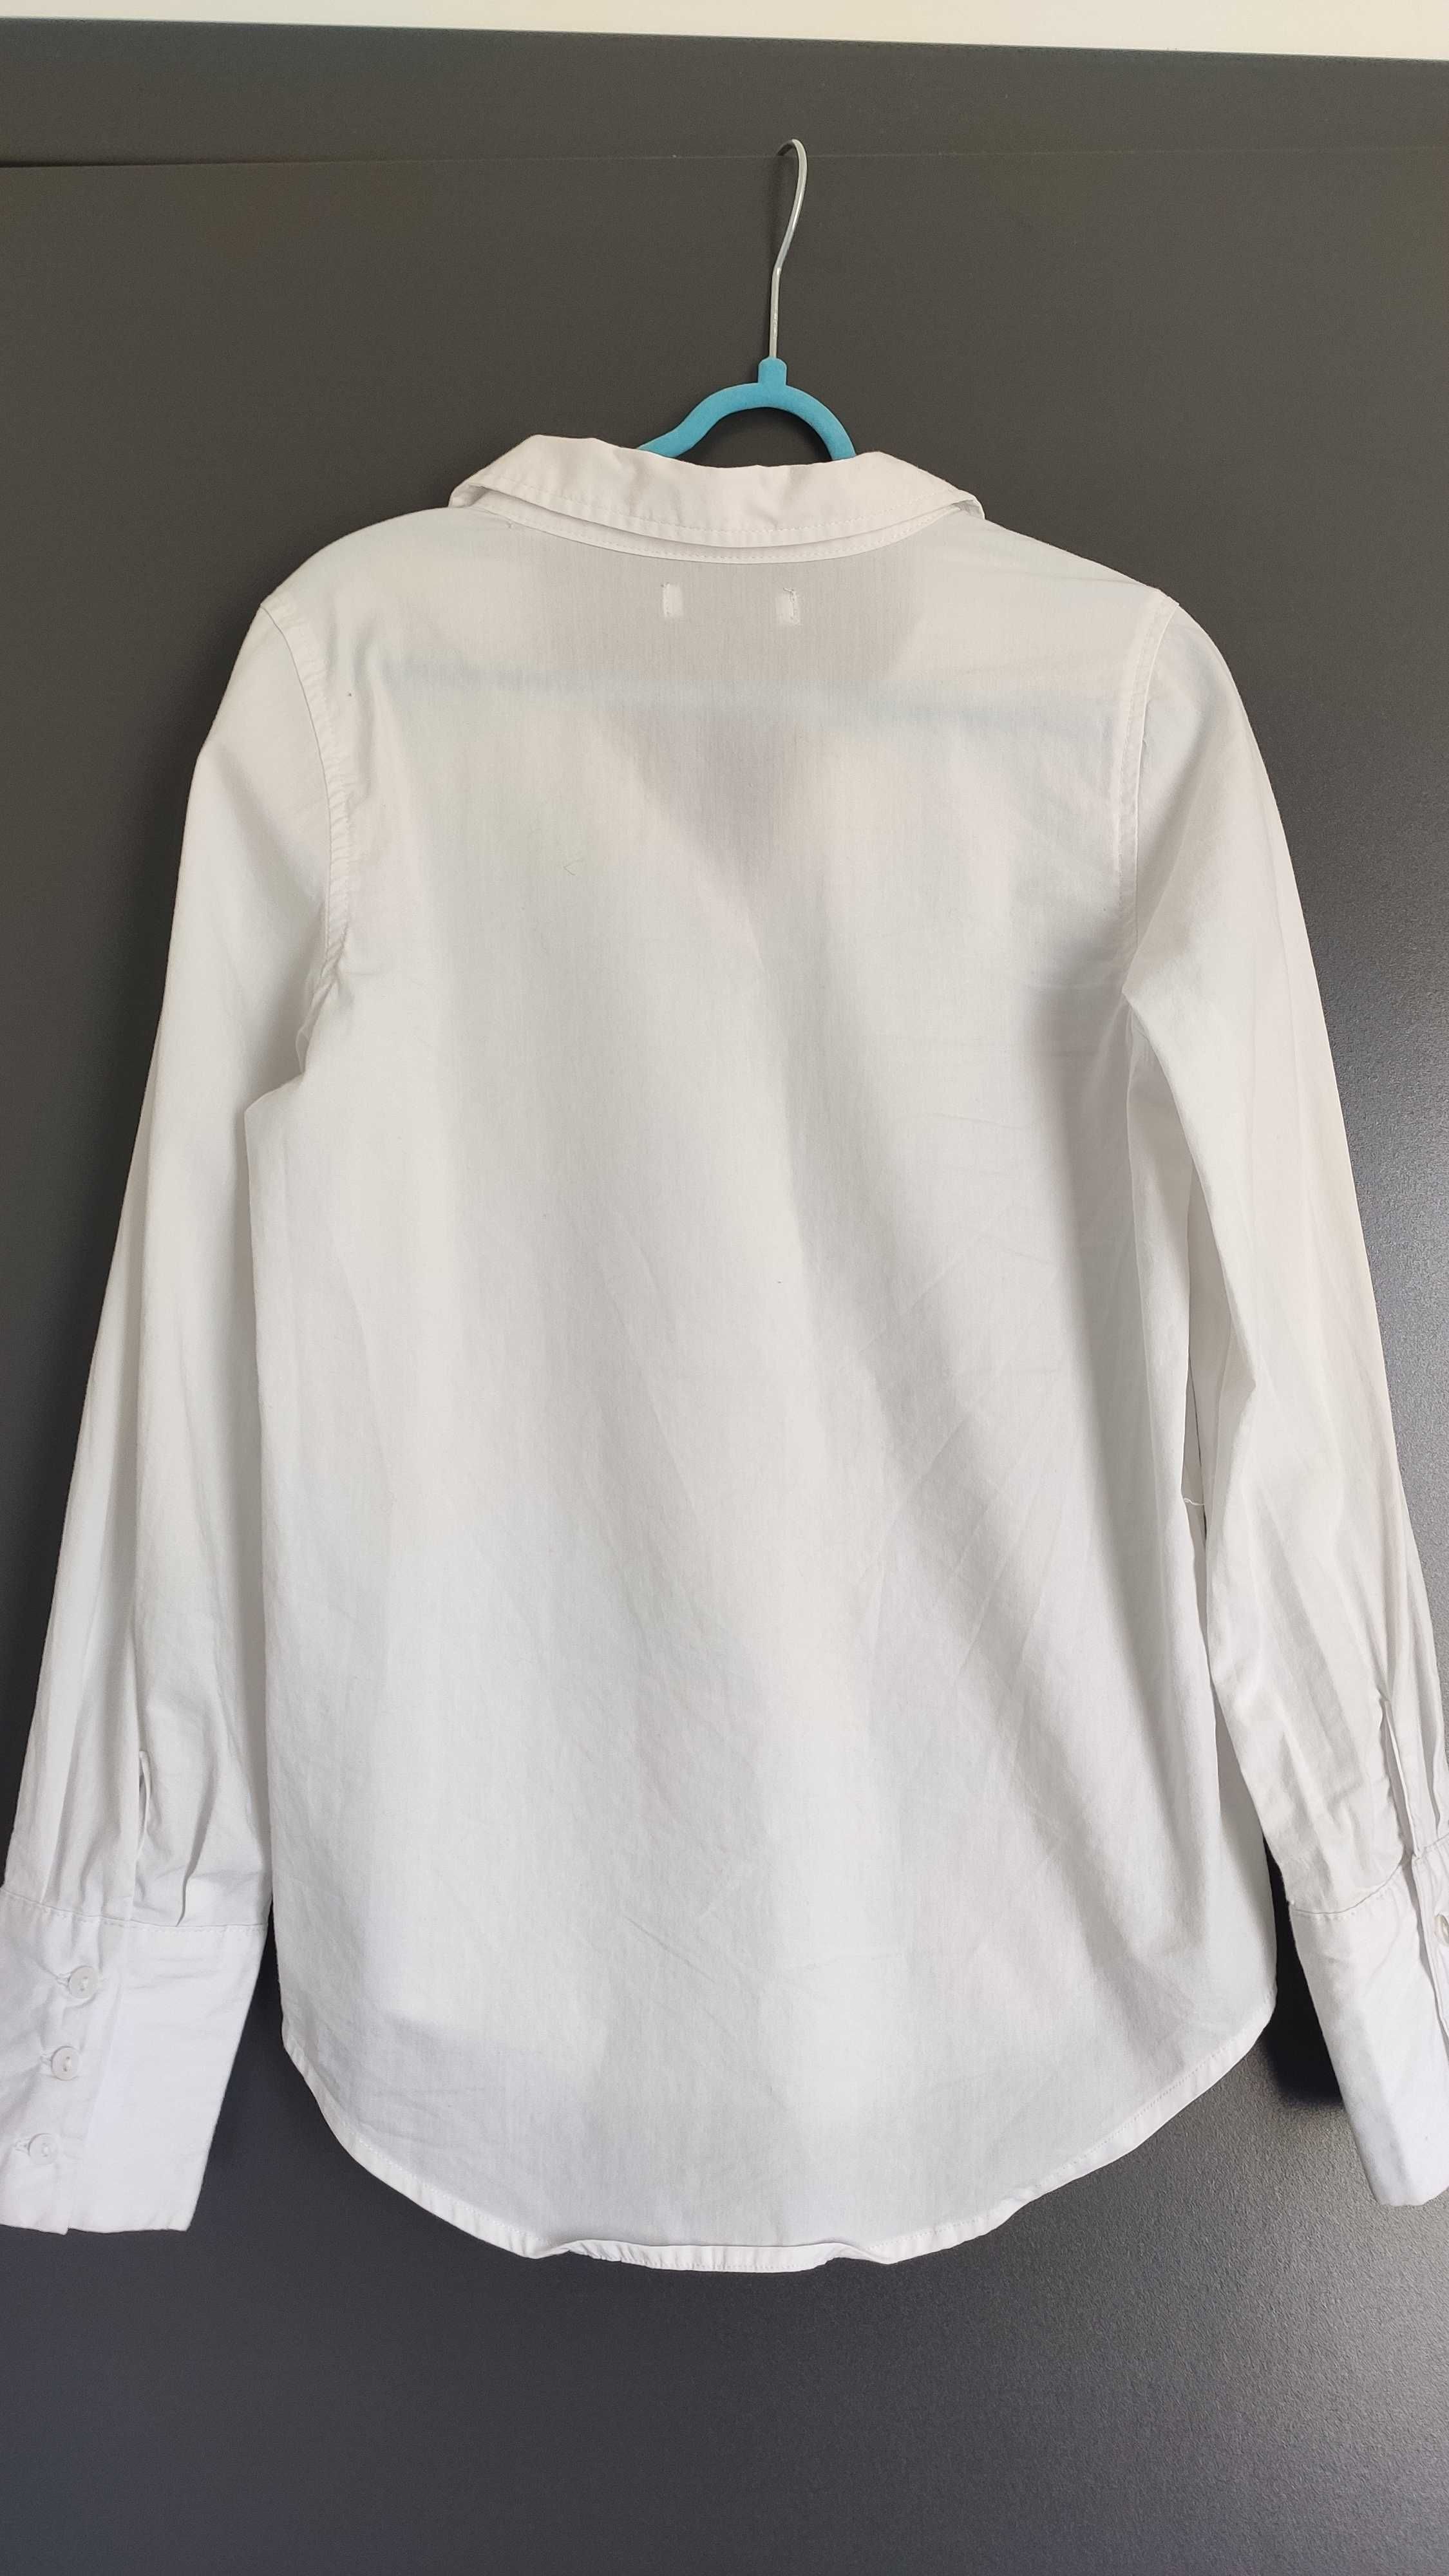 Bluzka koszulowa dziewczęca r. 134-140 długi rękaw 2 sztuki